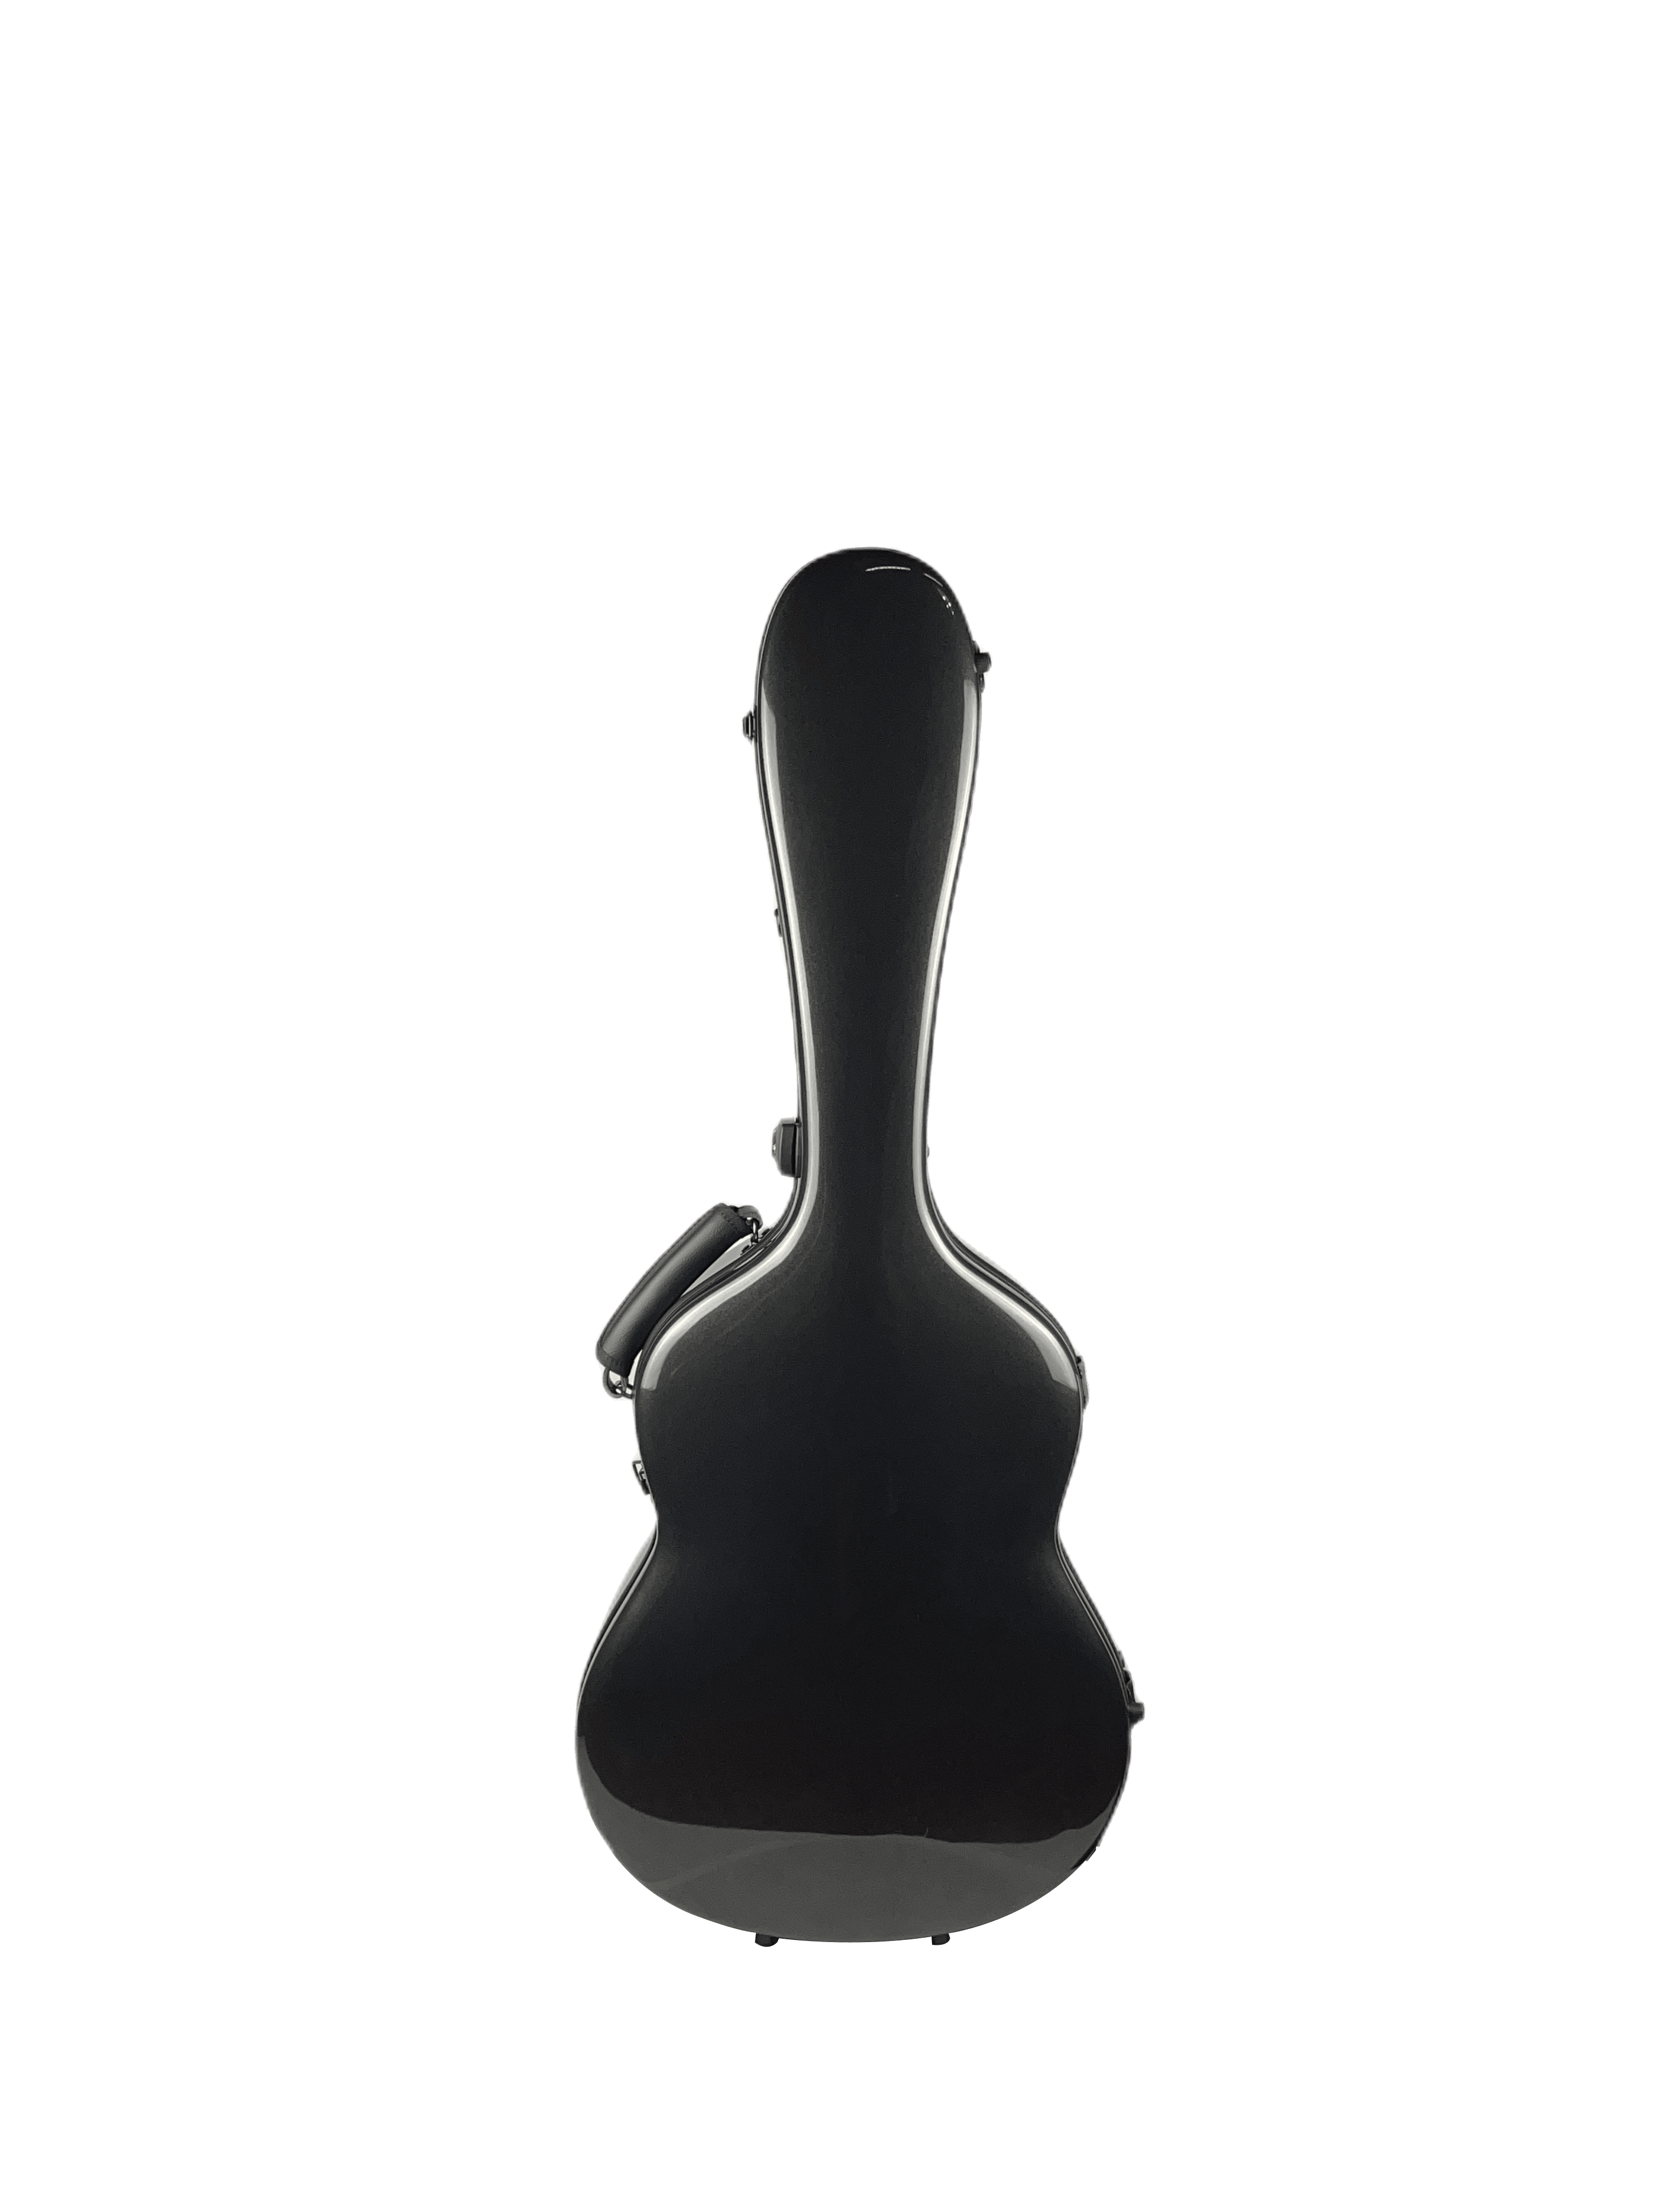 Carbon Case for Classical Guitar Acoustic, Flamenco guitar, Black Gloss - mackazie